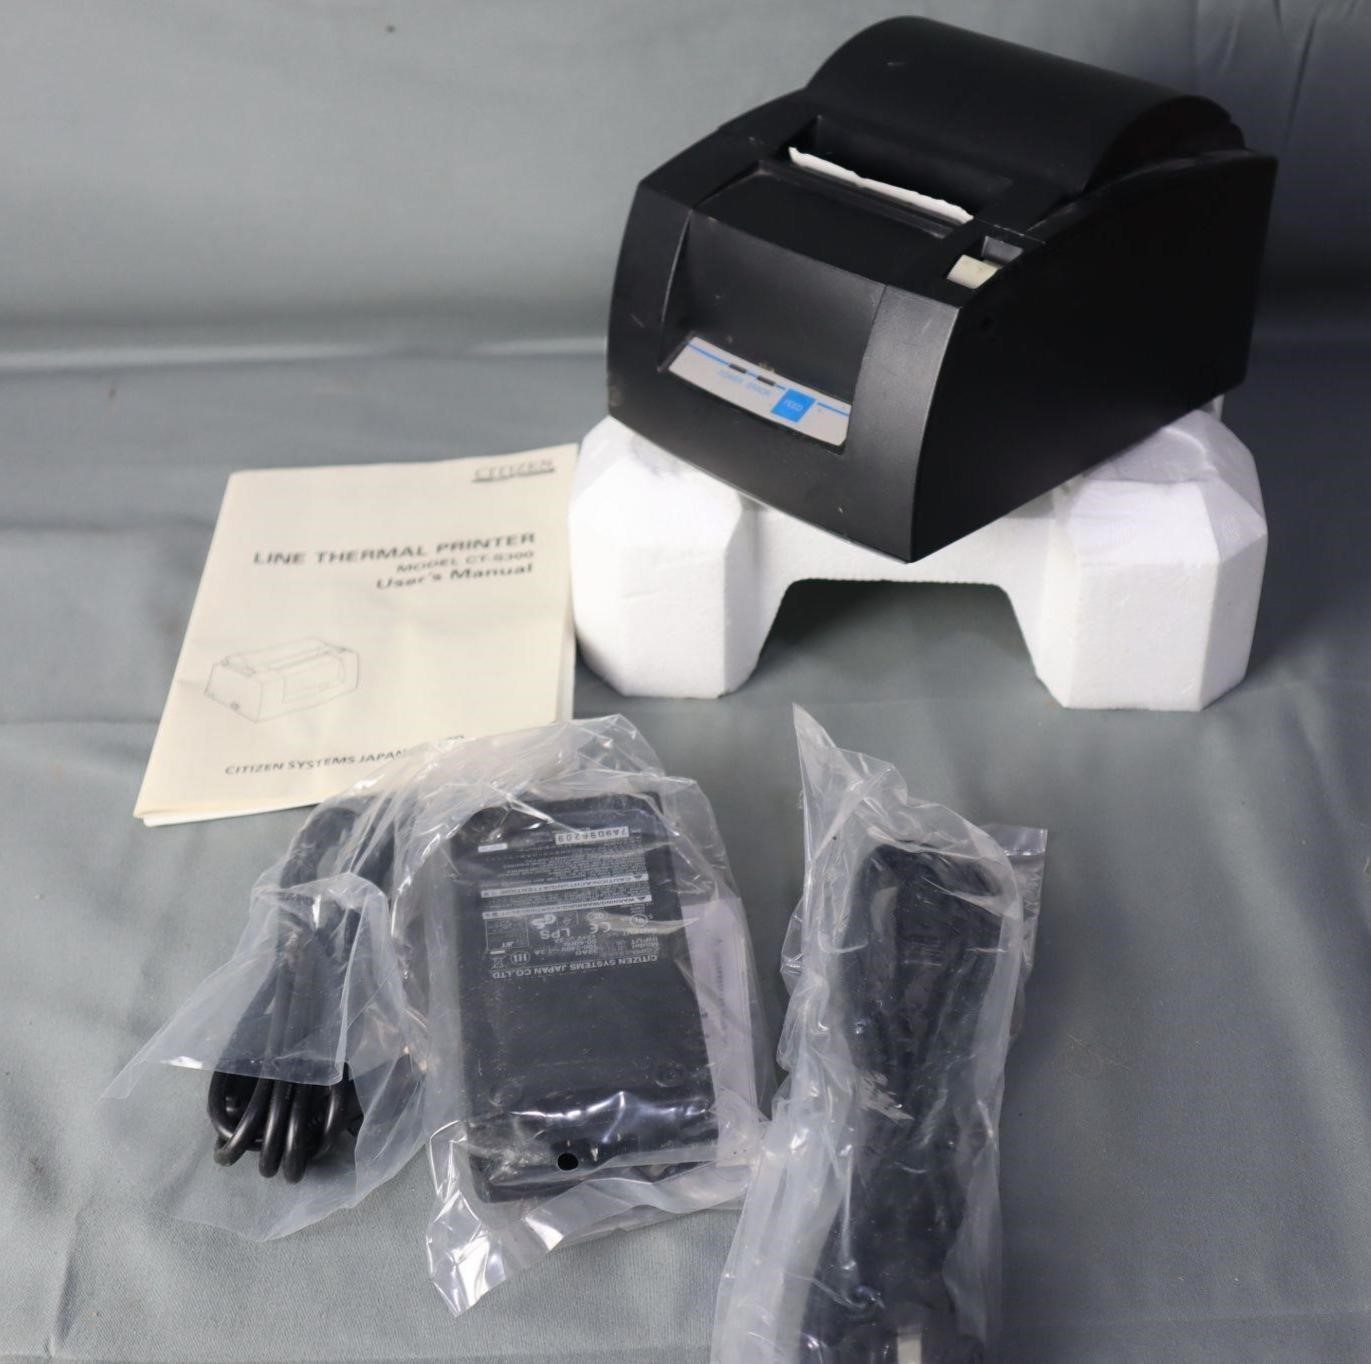 Citizen CT-S300 Receipt Printer